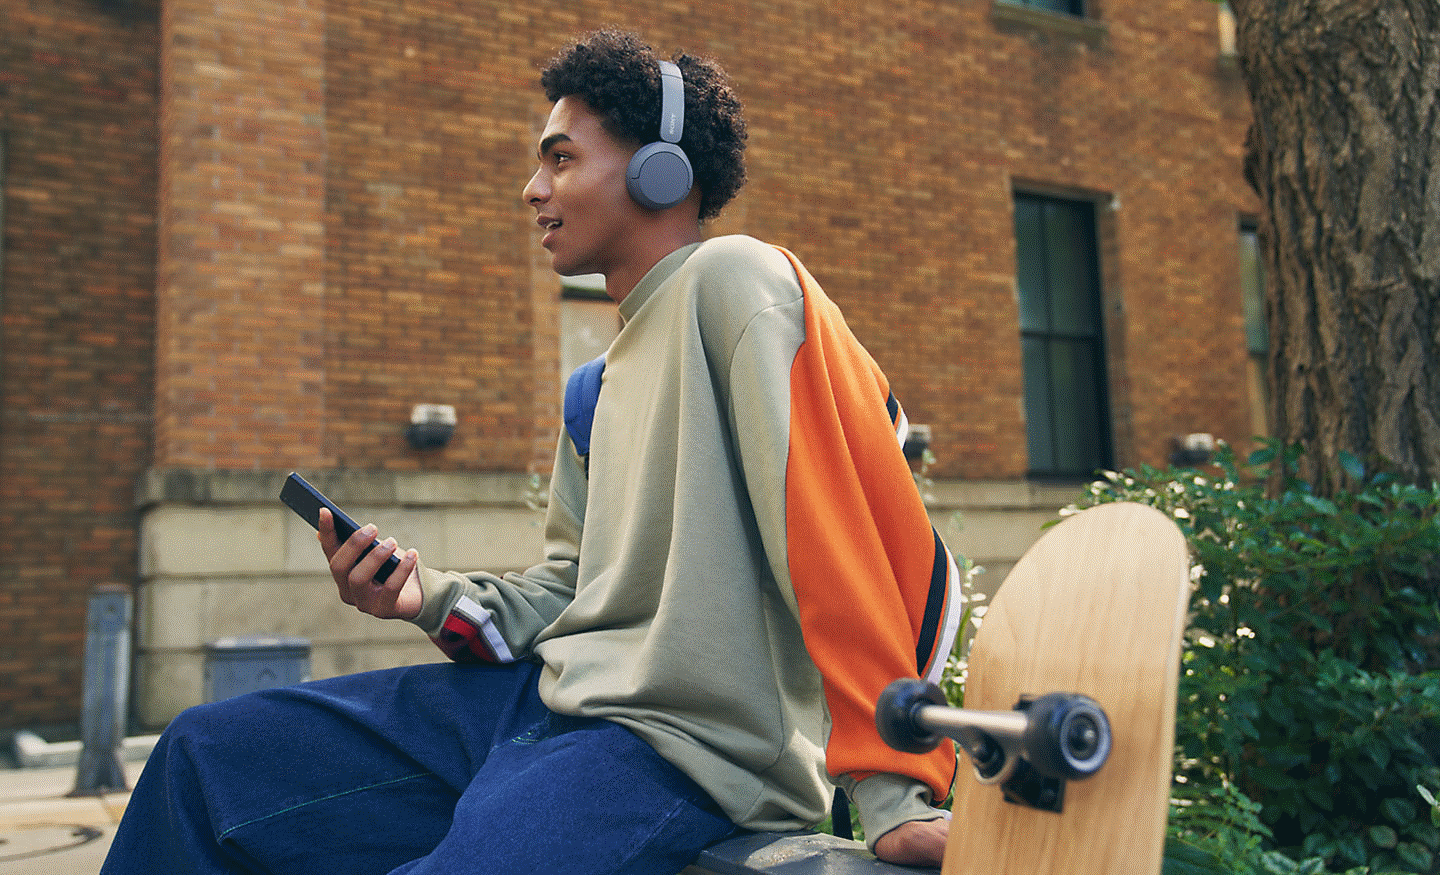 Snímek muže sedícího na zdi s nasazenými sluchátky Sony WH-CH520 a držícího mobilní telefon, se skateboardem v popředí